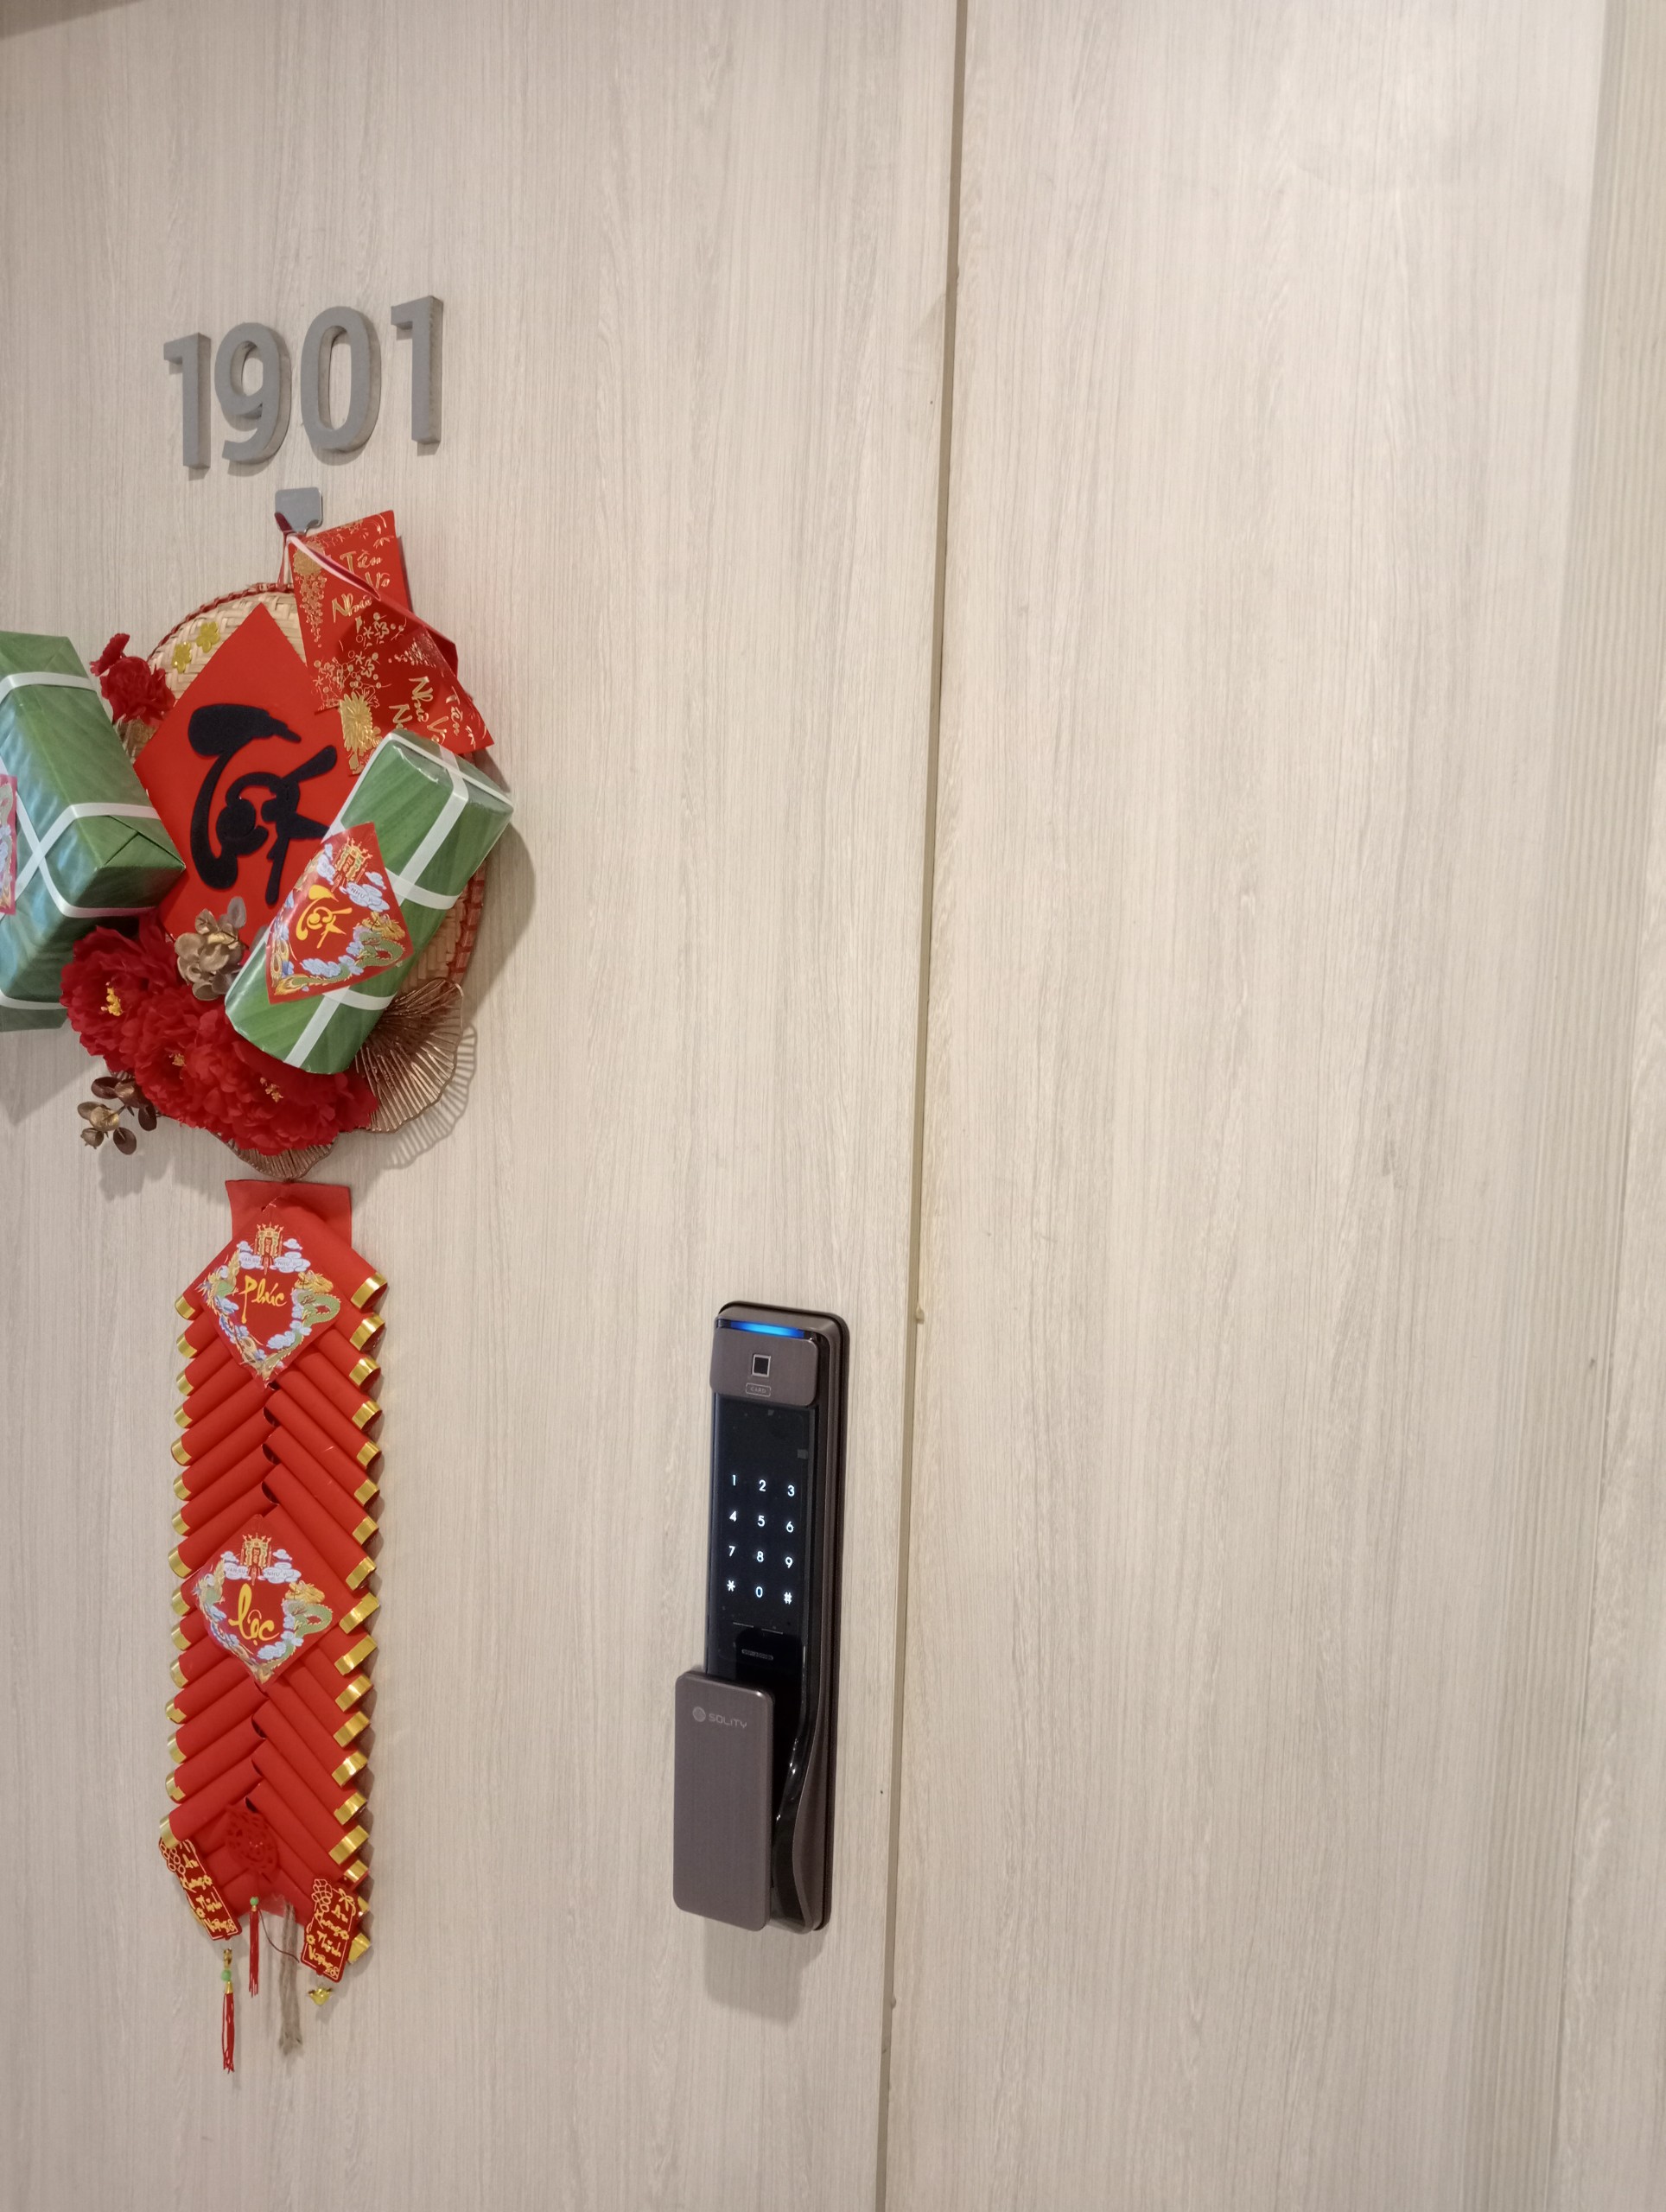 Căn hộ chung cư tại Long Biên rất phù hợp cho các thiết kế tay nắm Push-Pull hiện đại, các mẫu khóa với thân ruột sâu đến từ Samsung, Solity Hàn Quốc